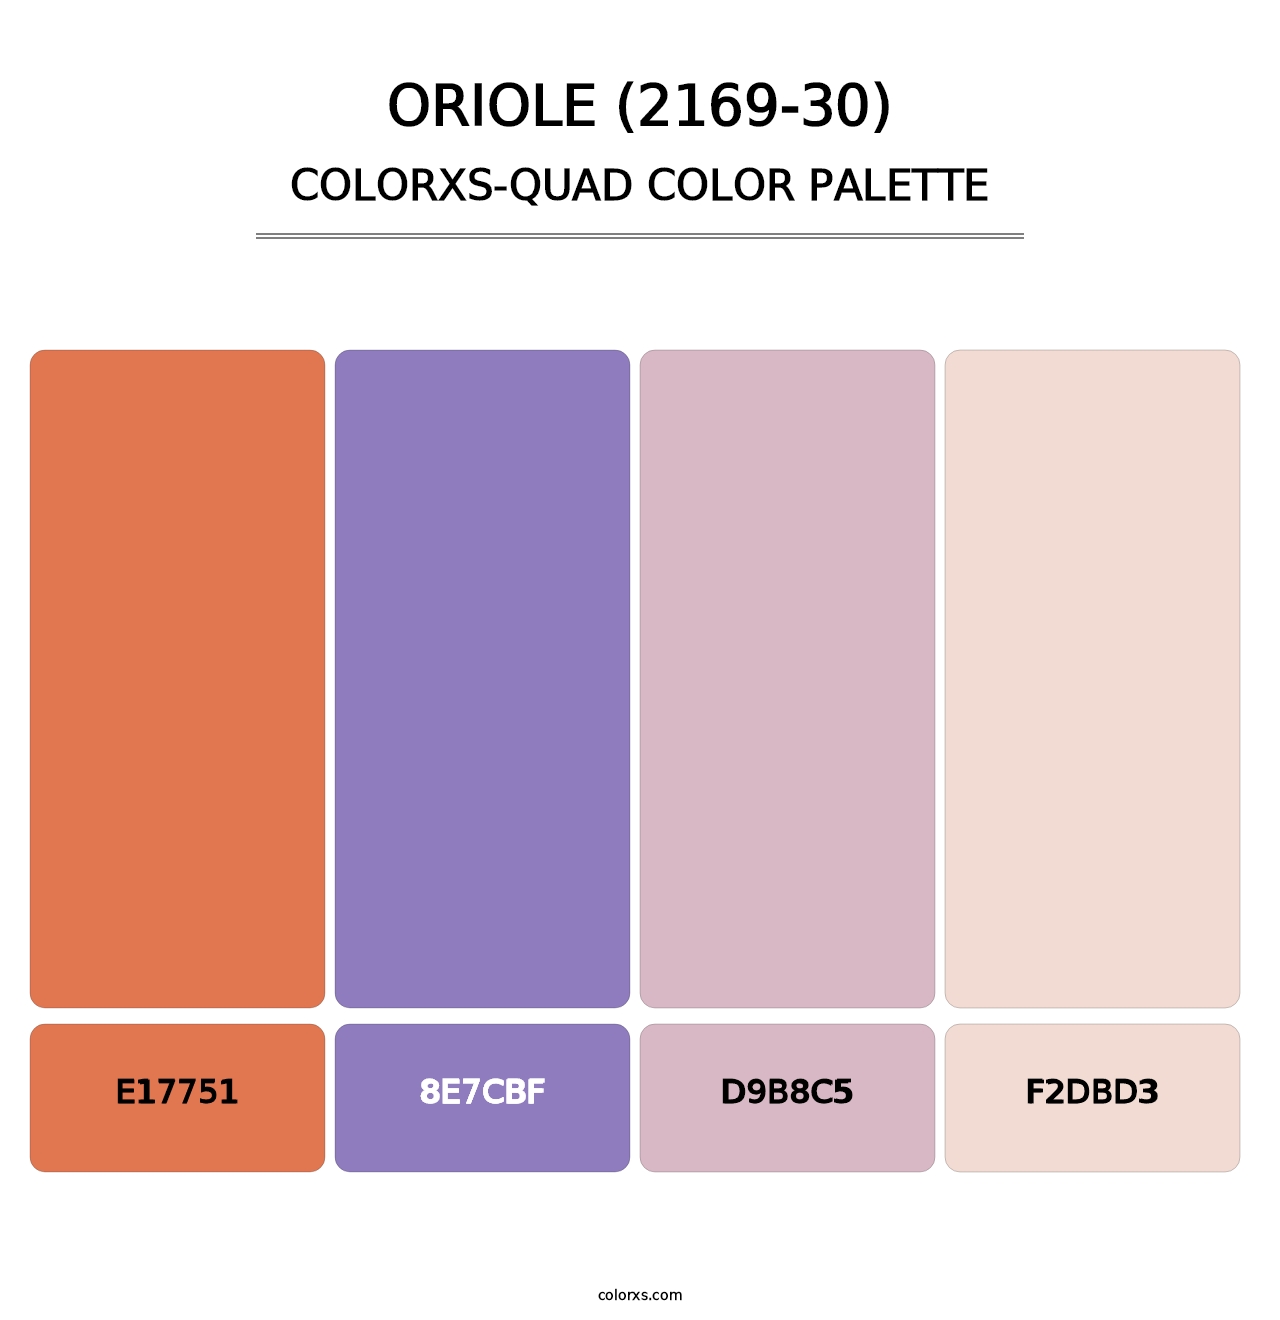 Oriole (2169-30) - Colorxs Quad Palette